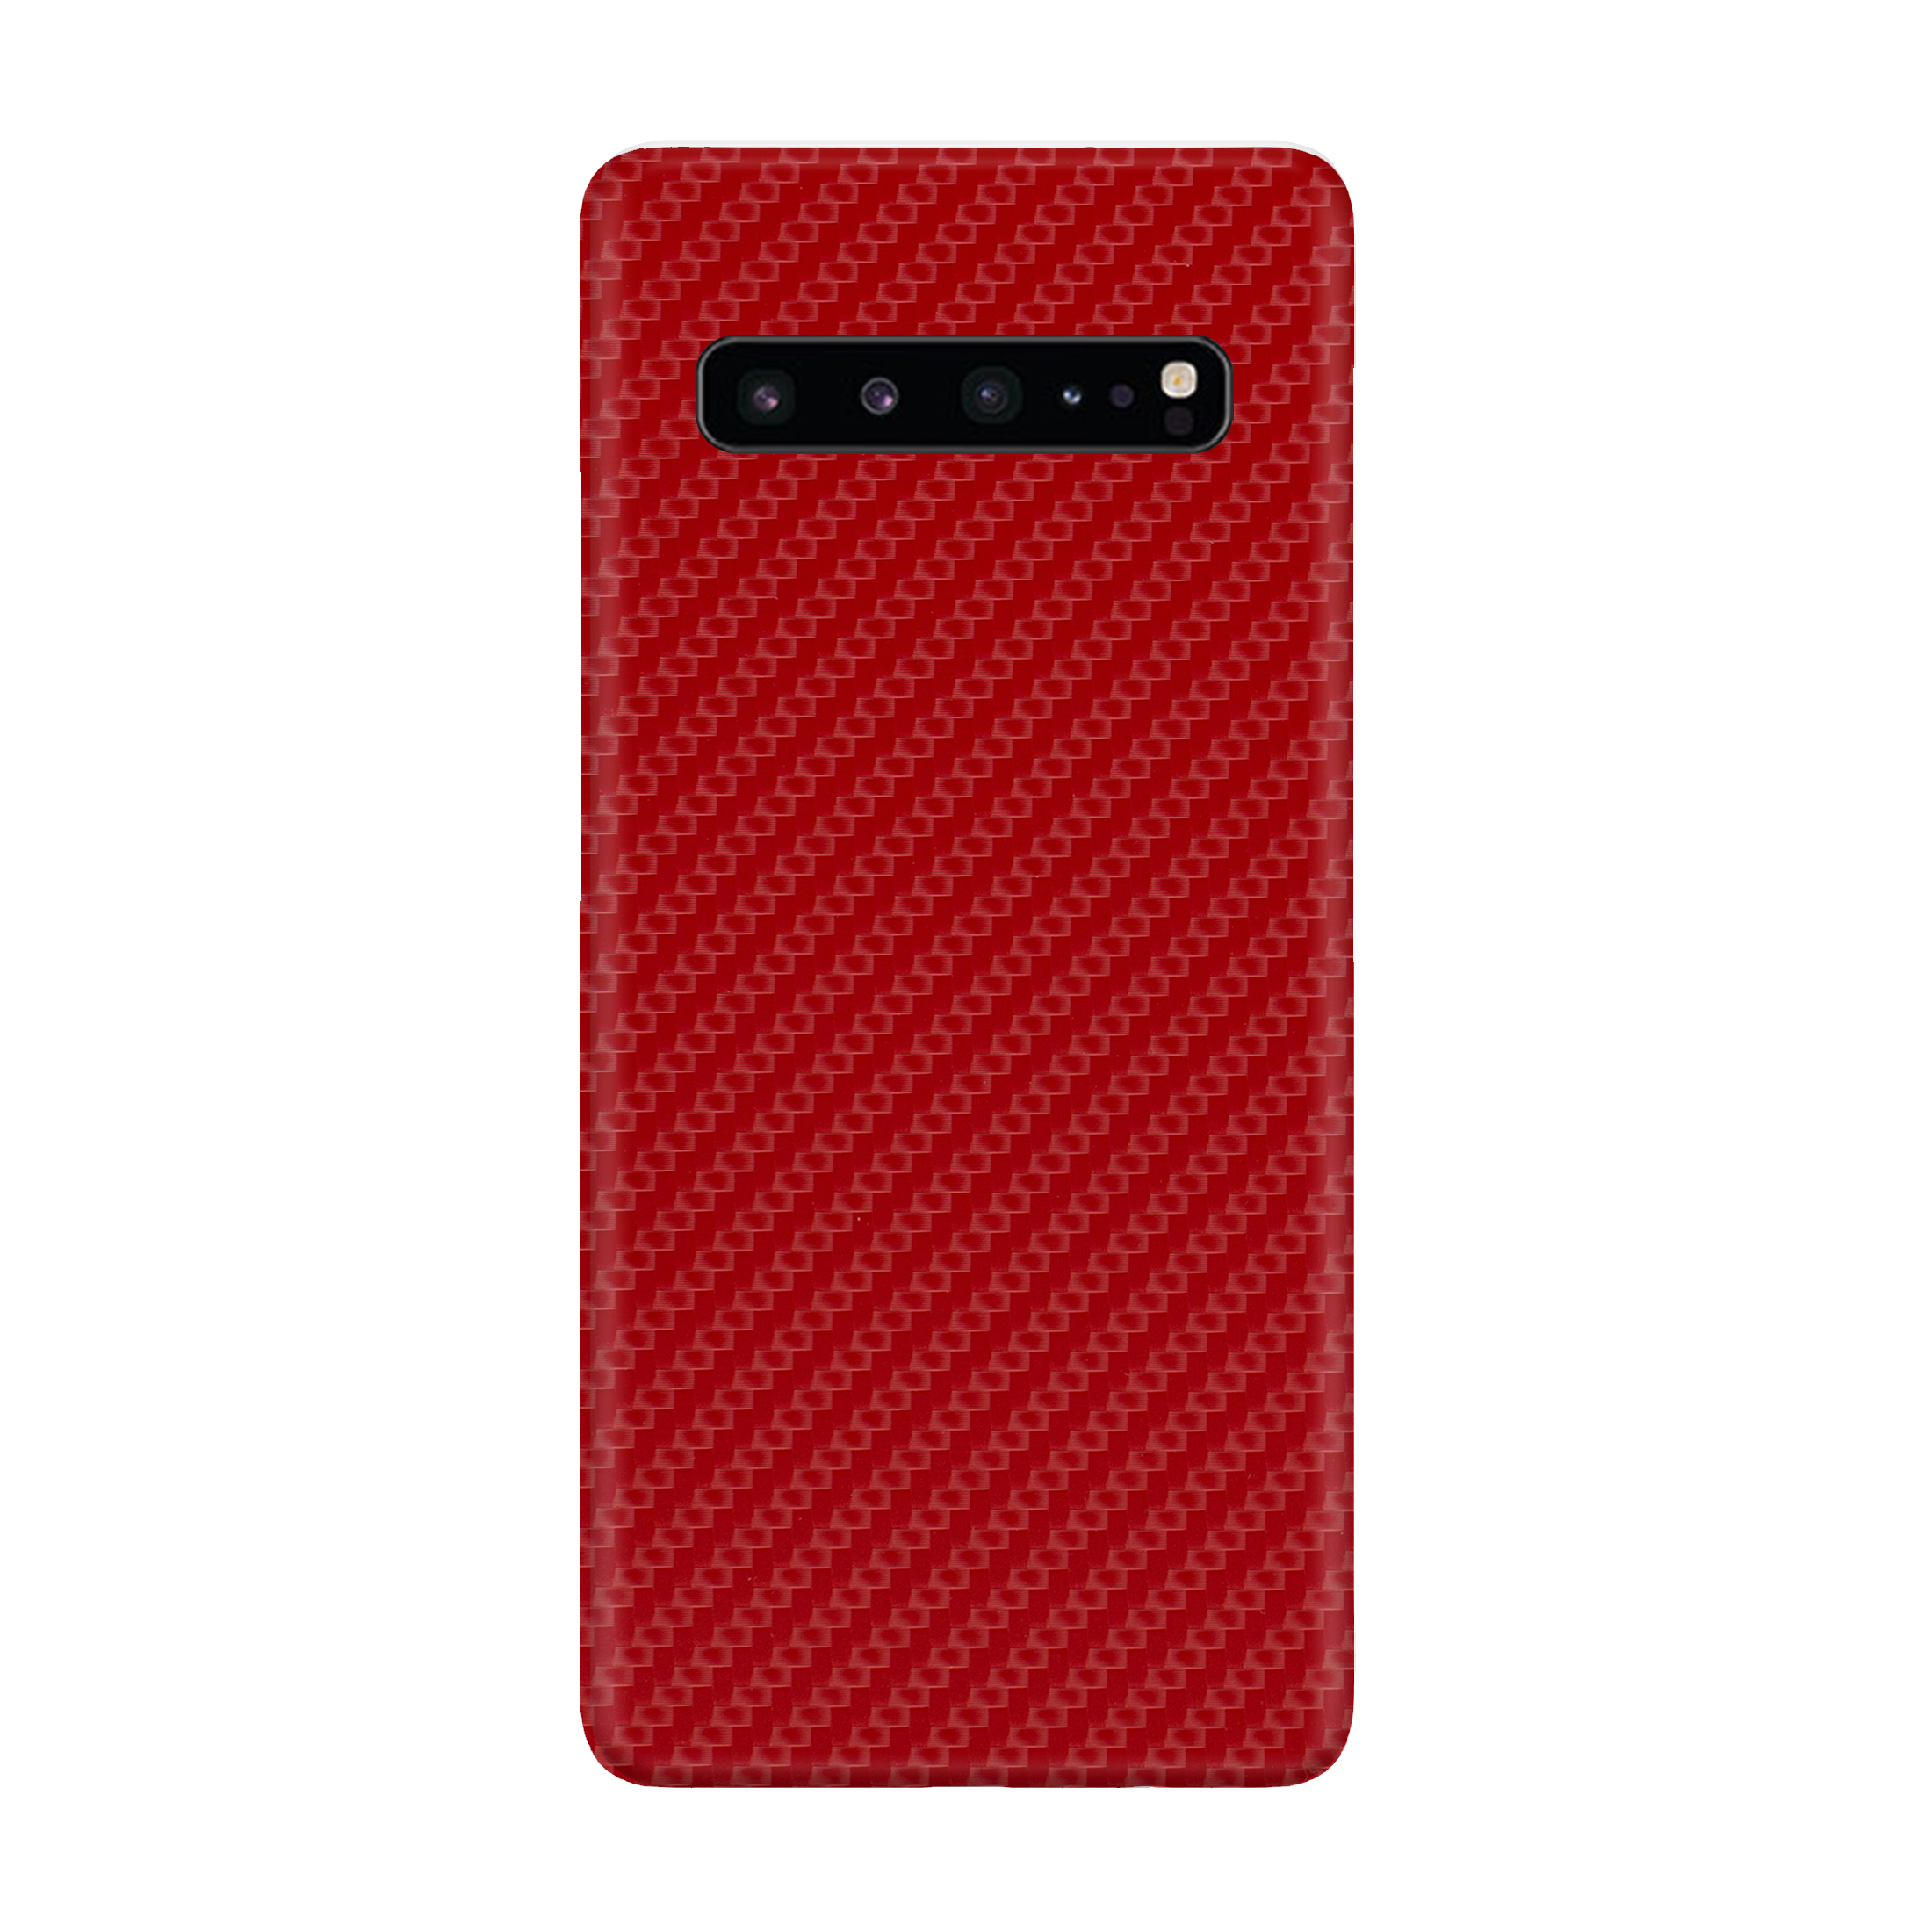 Carbon Fiber Red Skin for Samsung S10 5G